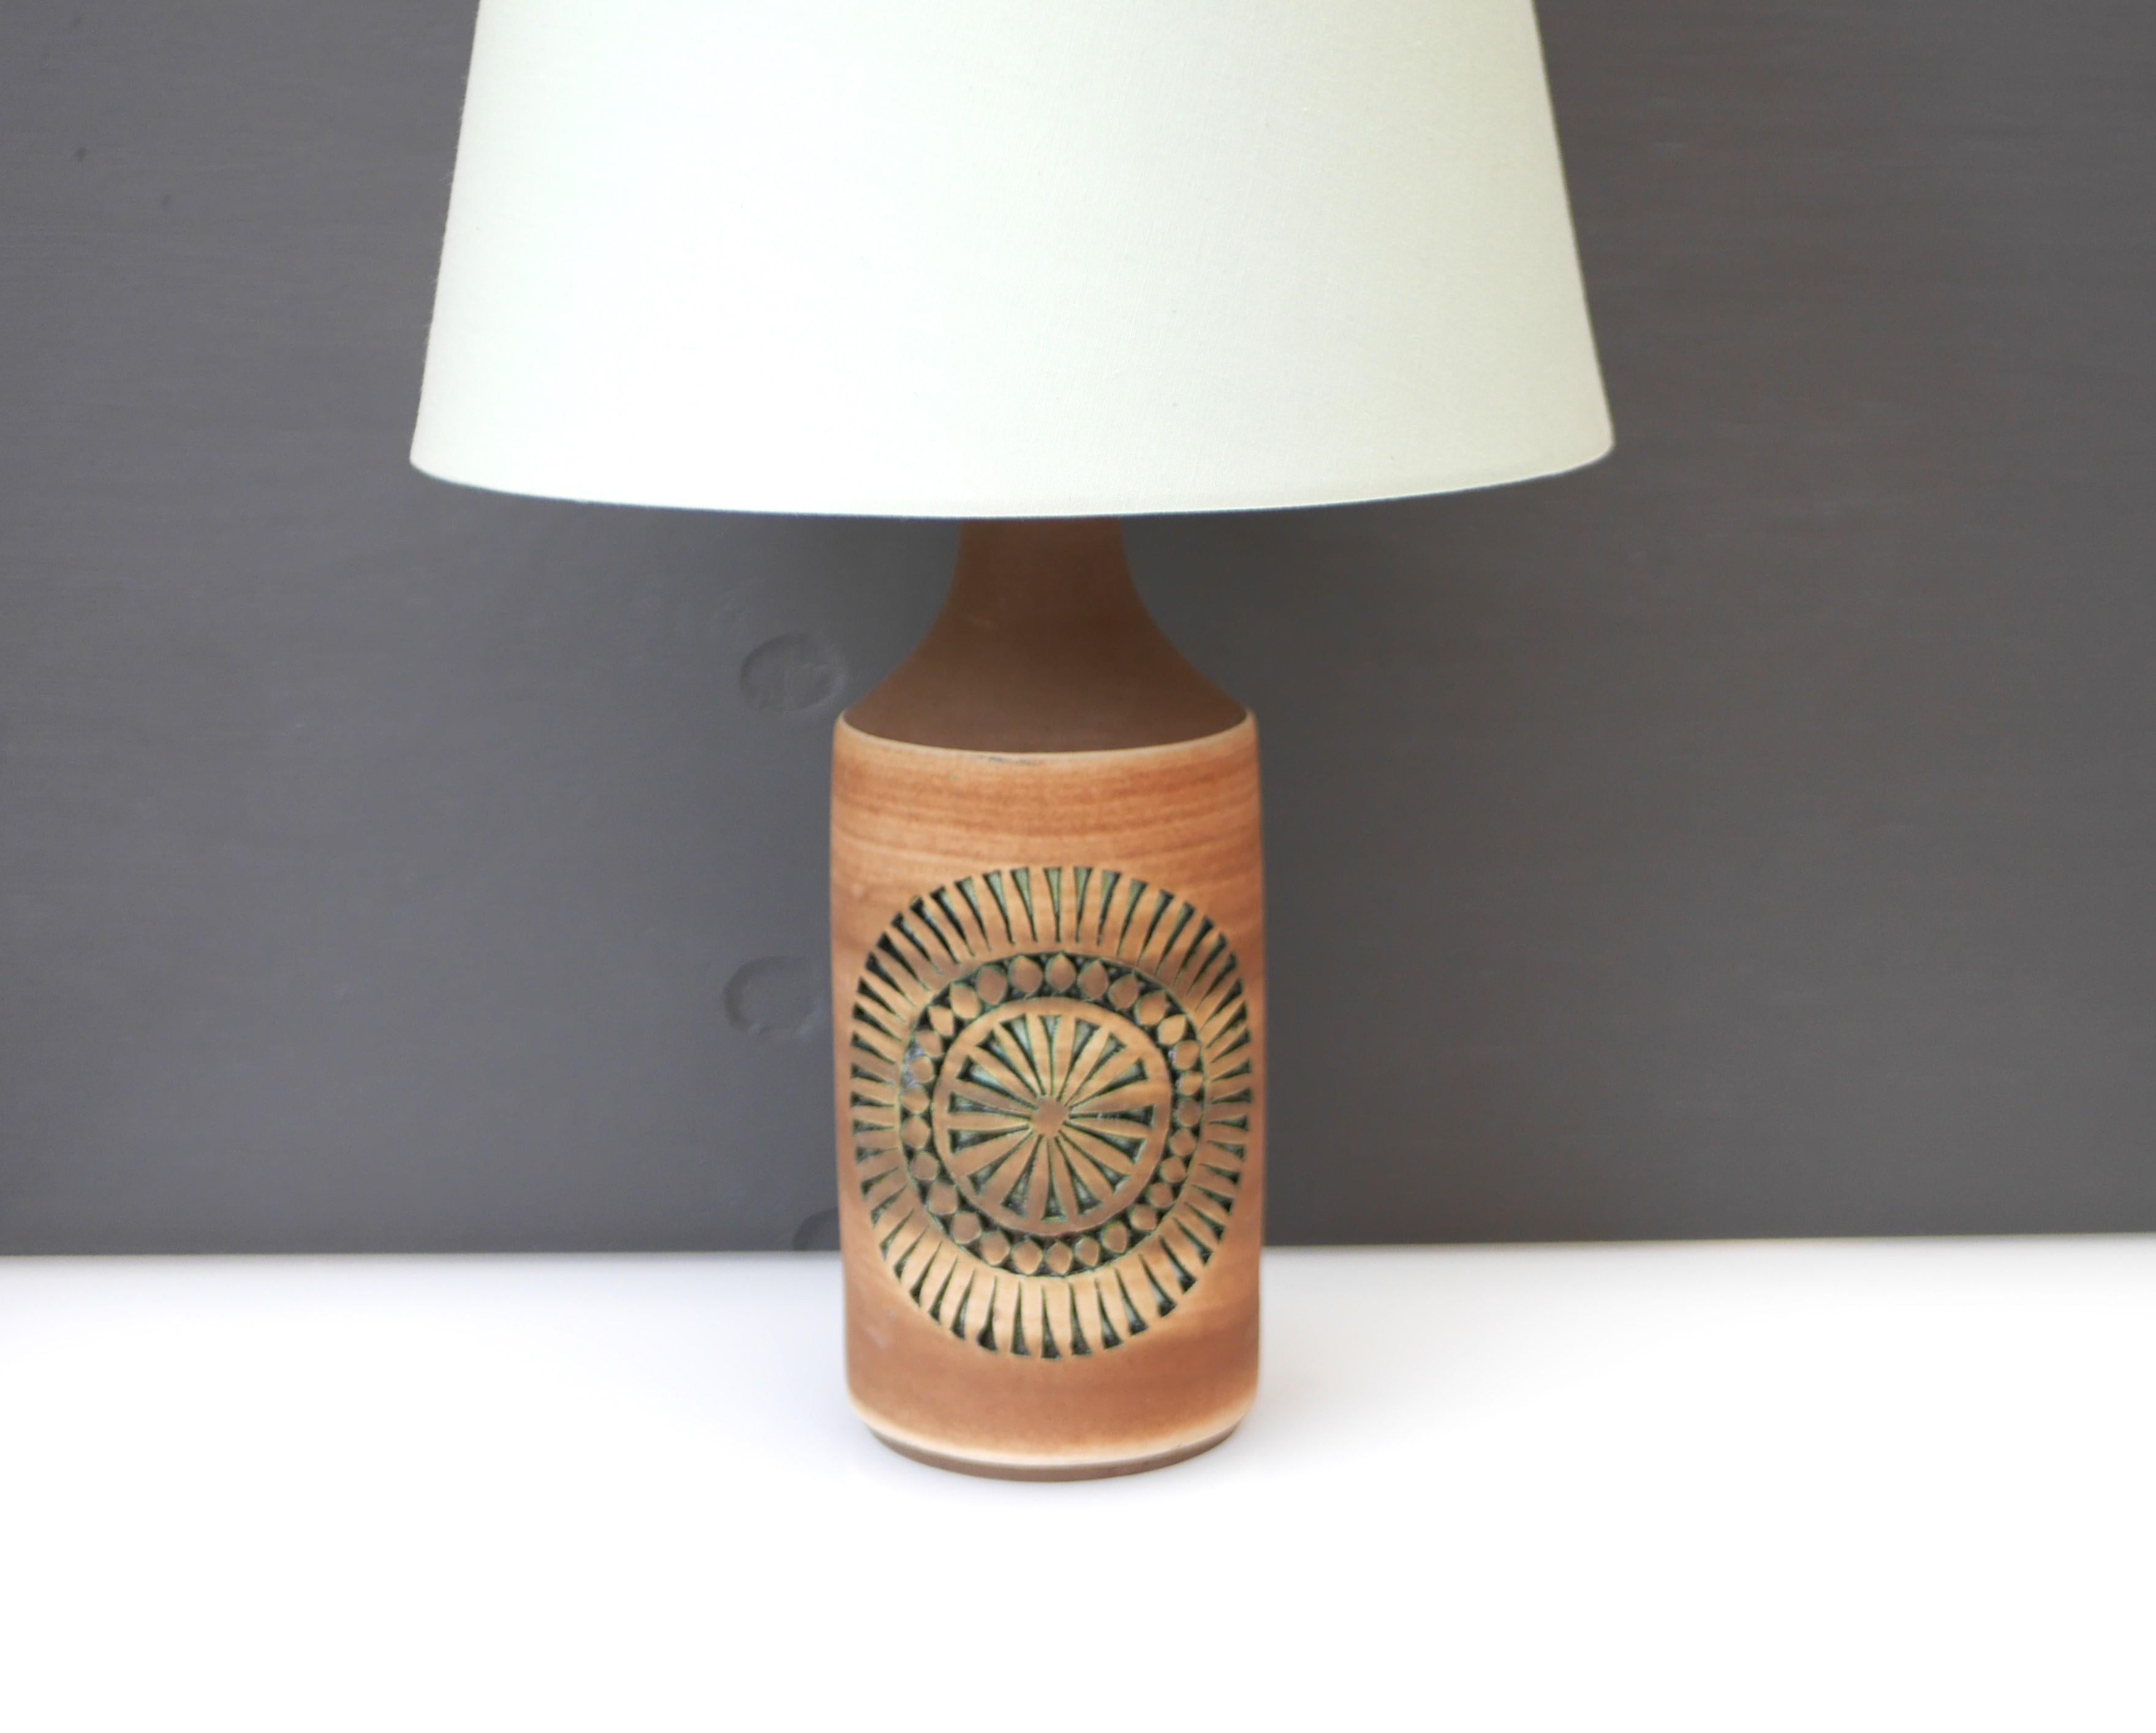 Ein fantastischer, ziemlich großer Vintage-Keramik-Lampensockel, handgefertigt von Thomas Anagrius für Alingsås Keramik, Schweden. Dieser Lampensockel hat ein einfaches Design, in das komplizierte Muster eingebettet sind, und er ist komplett